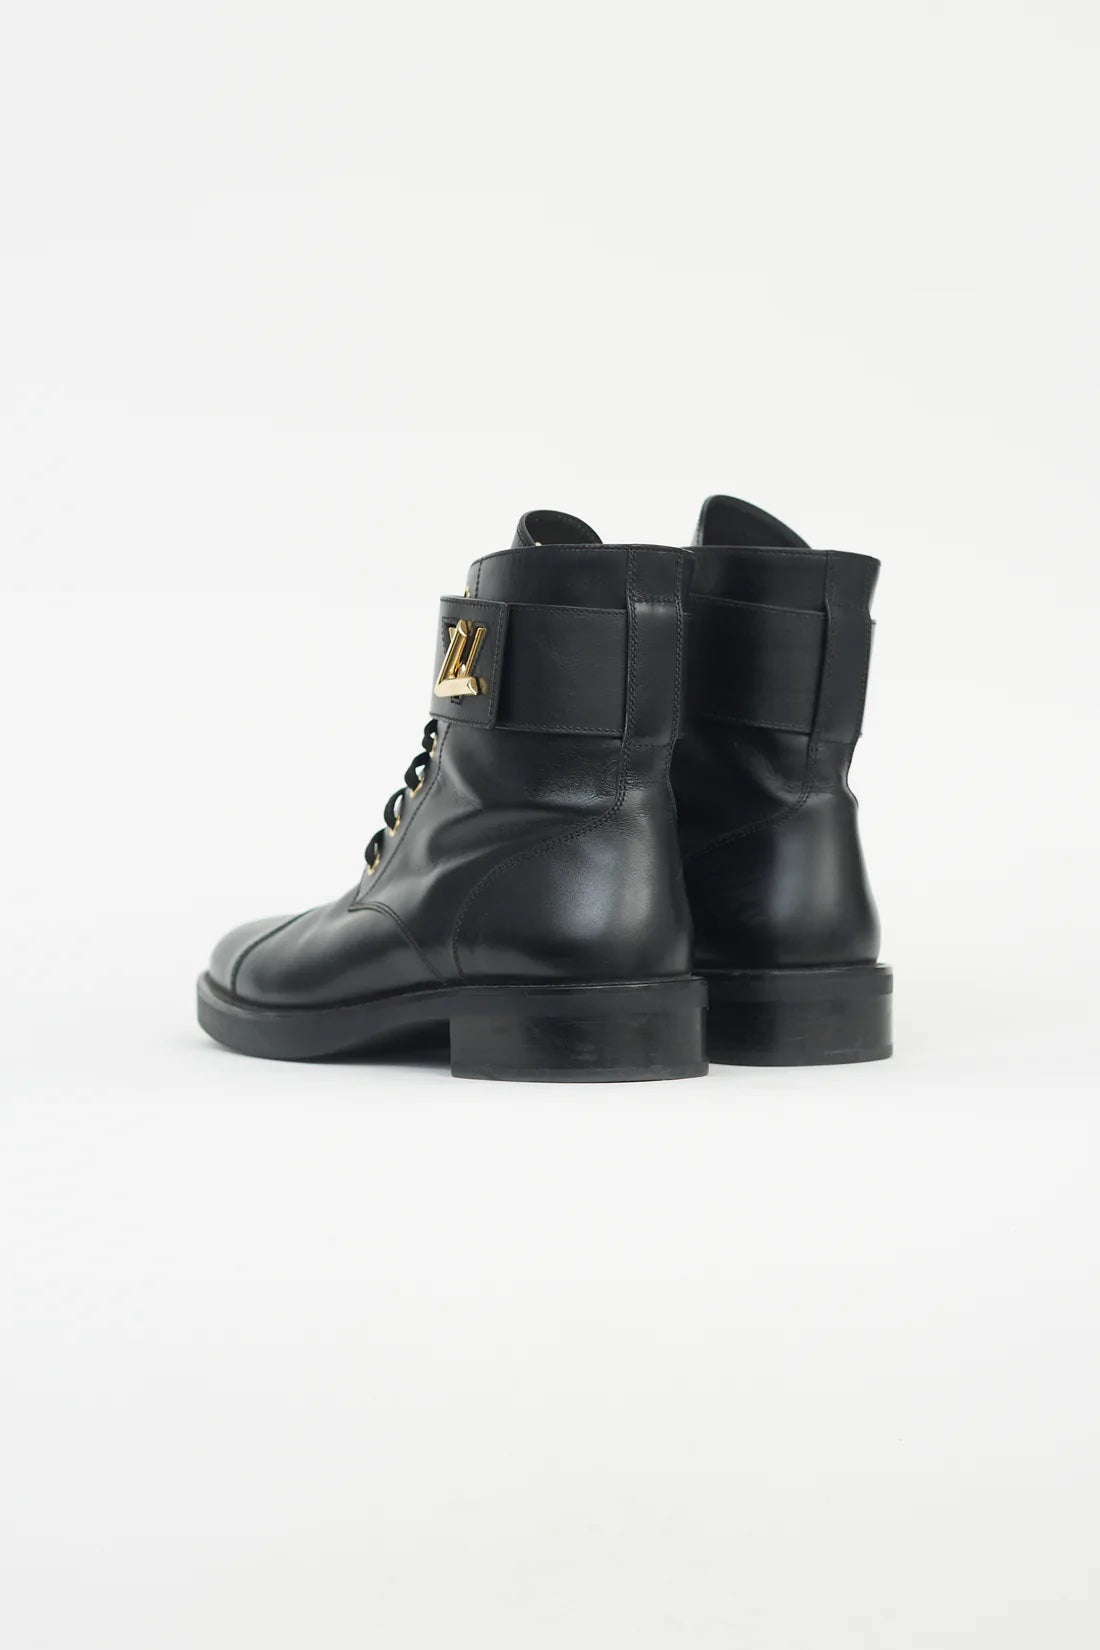 Louis Vuitton Metropolis combat boots